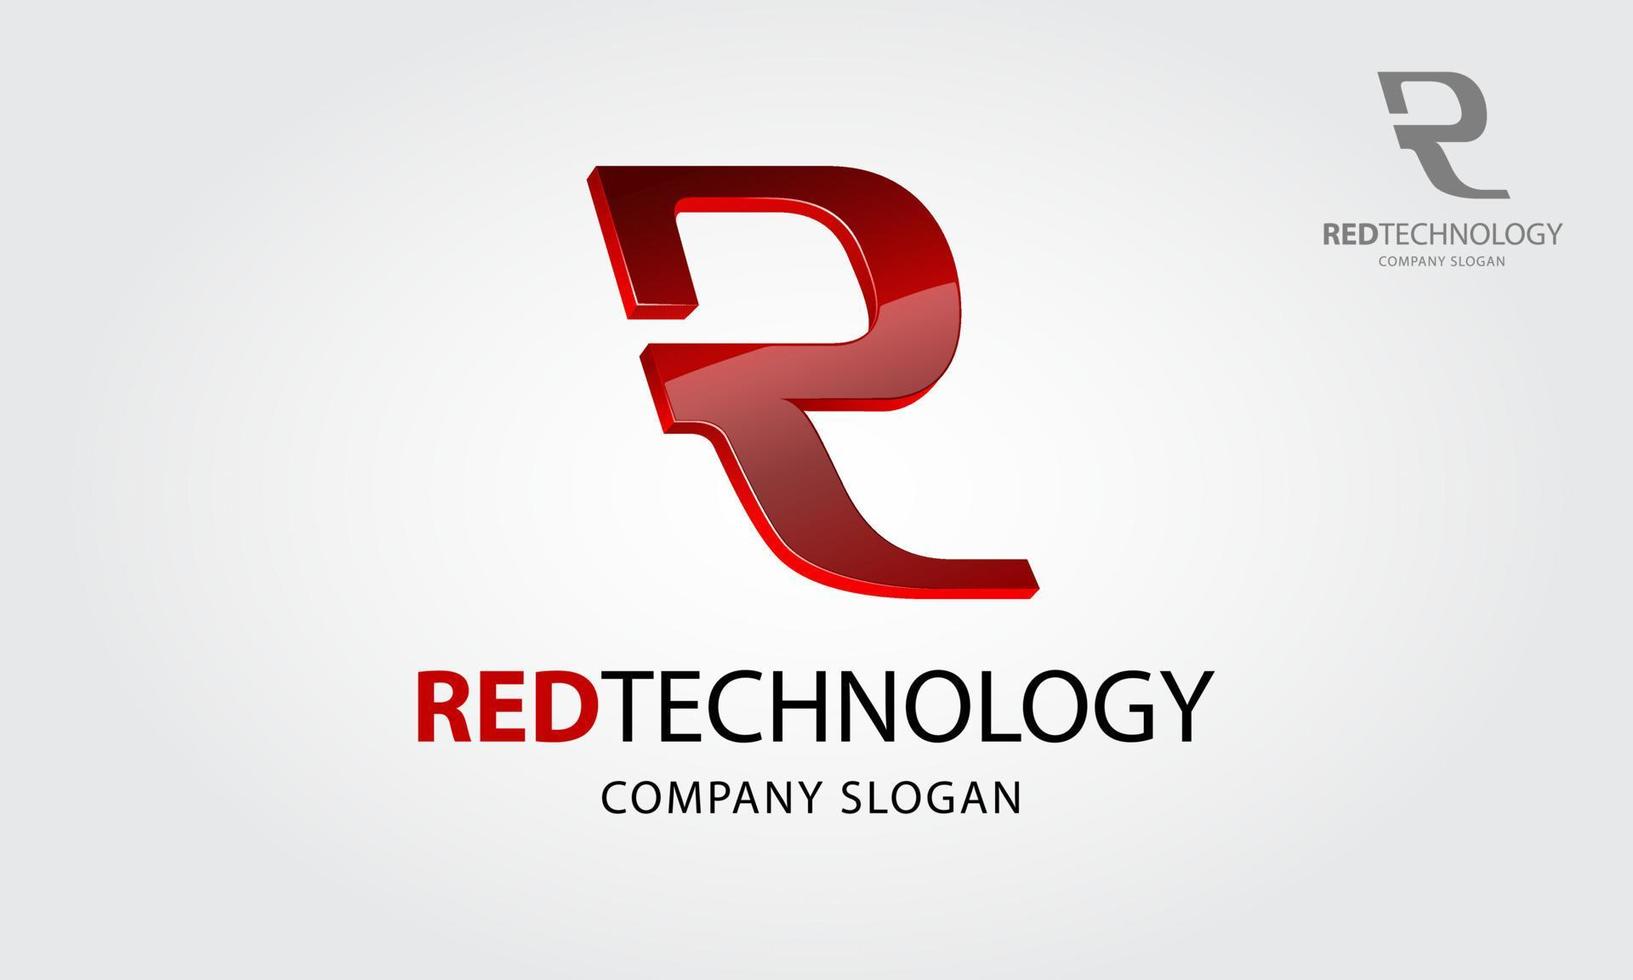 rode technologie vector logo. deze logo-letter van r of het is een eerste logo, het is een 3D-vectorlogo met glanzend effect, probeer een geavanceerde technologie, geavanceerde technologie, slim en moderniteit te symboliseren.